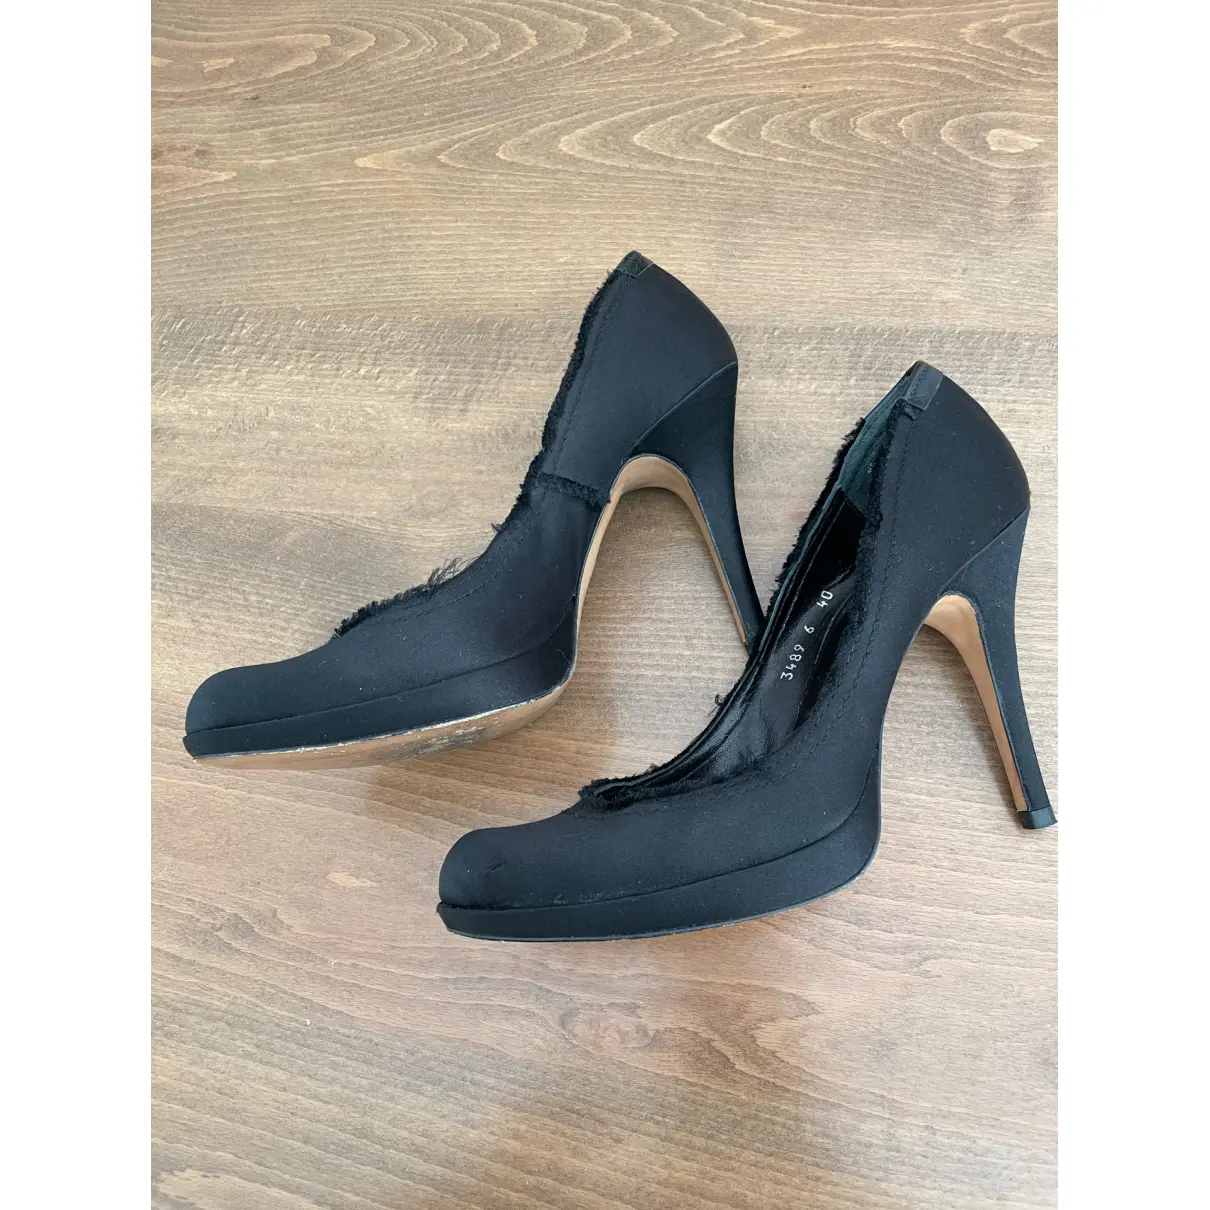 Buy Pedro Garcia Cloth heels online